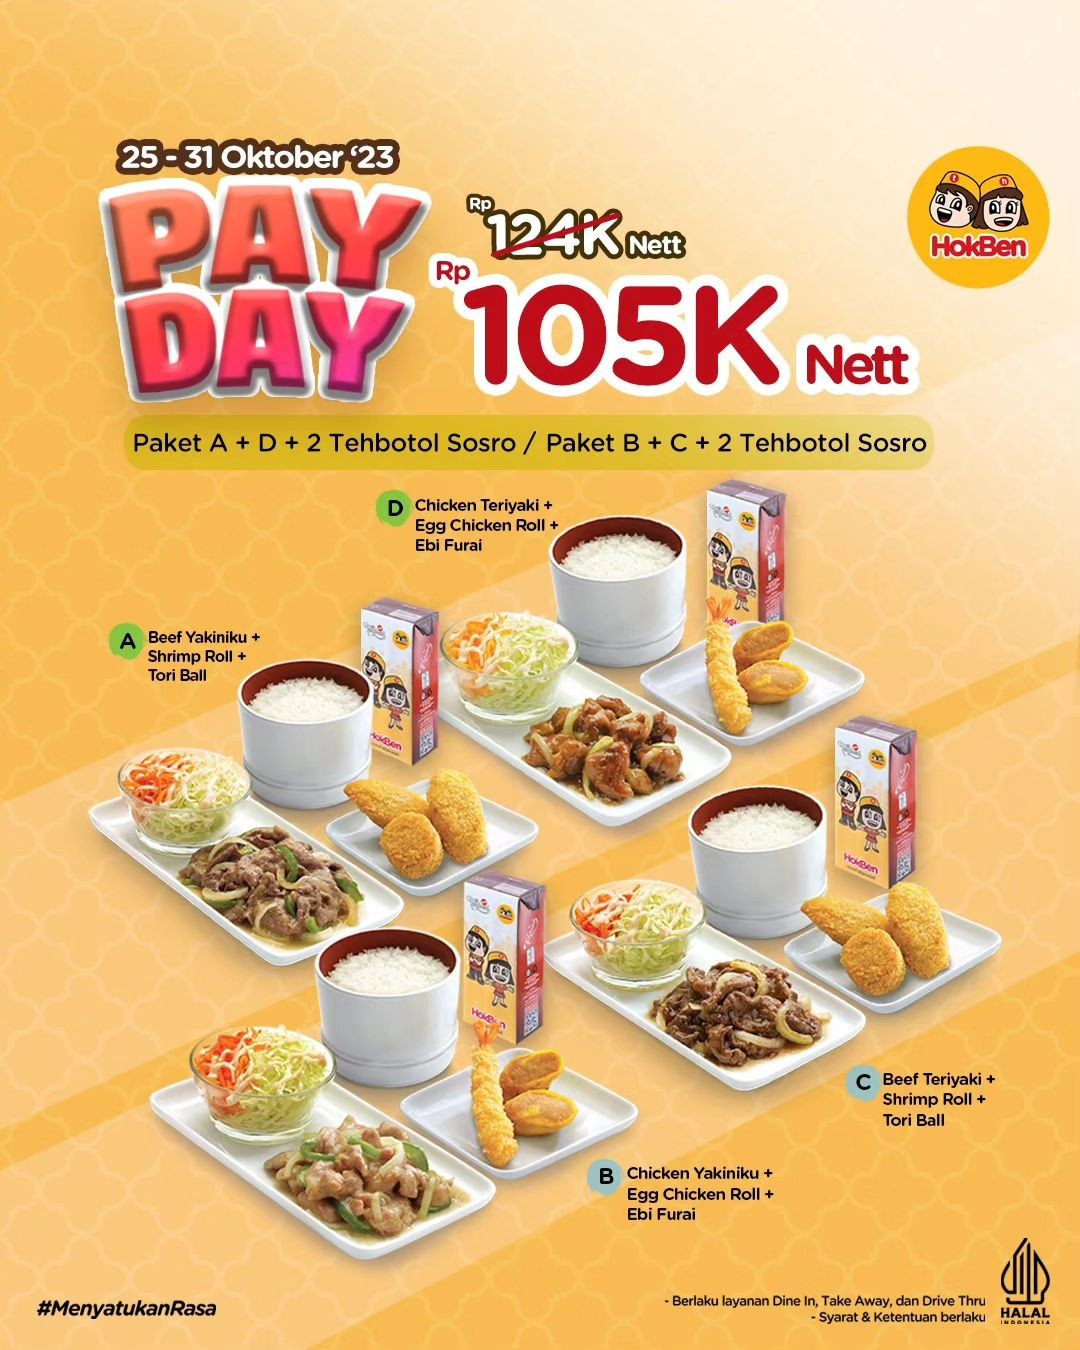 Promo Hokben Payday: Cuma Rp105.000 Tinggal Pilih, Paket A+D atau Paket B+C Lengkap dengan Teh Botol Sosro